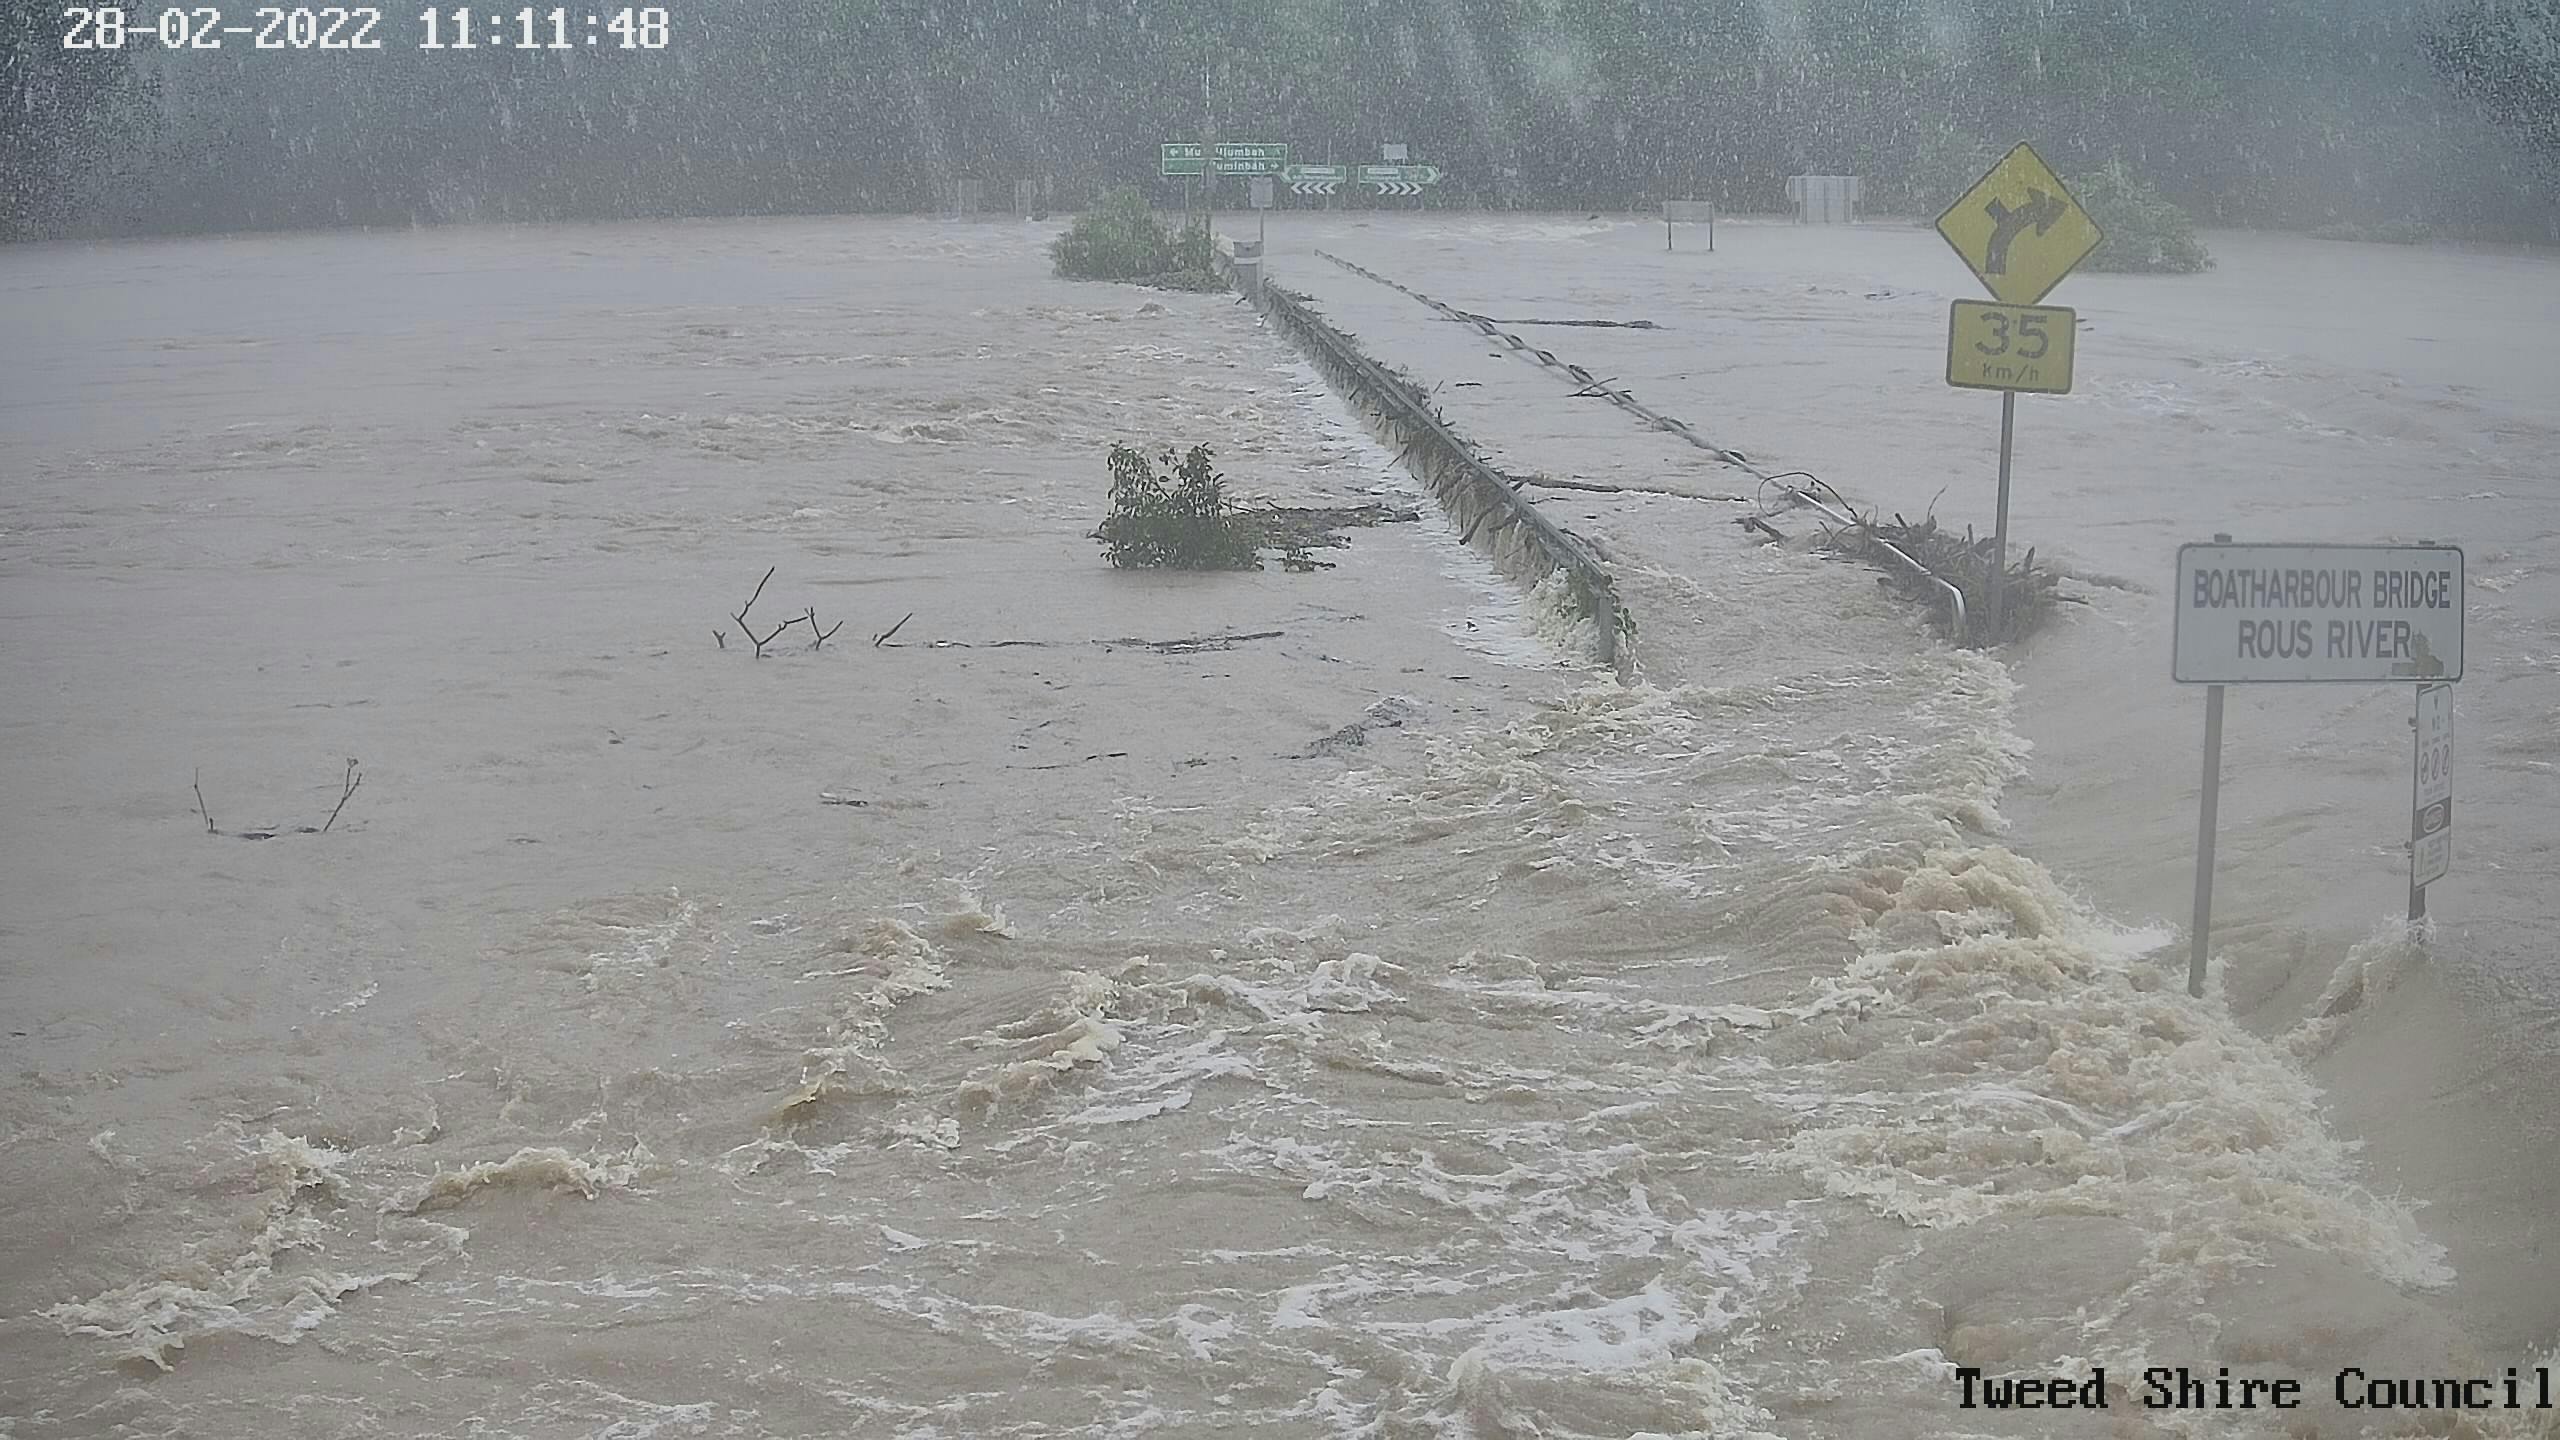 Boatharbour Bridge over the Rous River, flooded..jpg